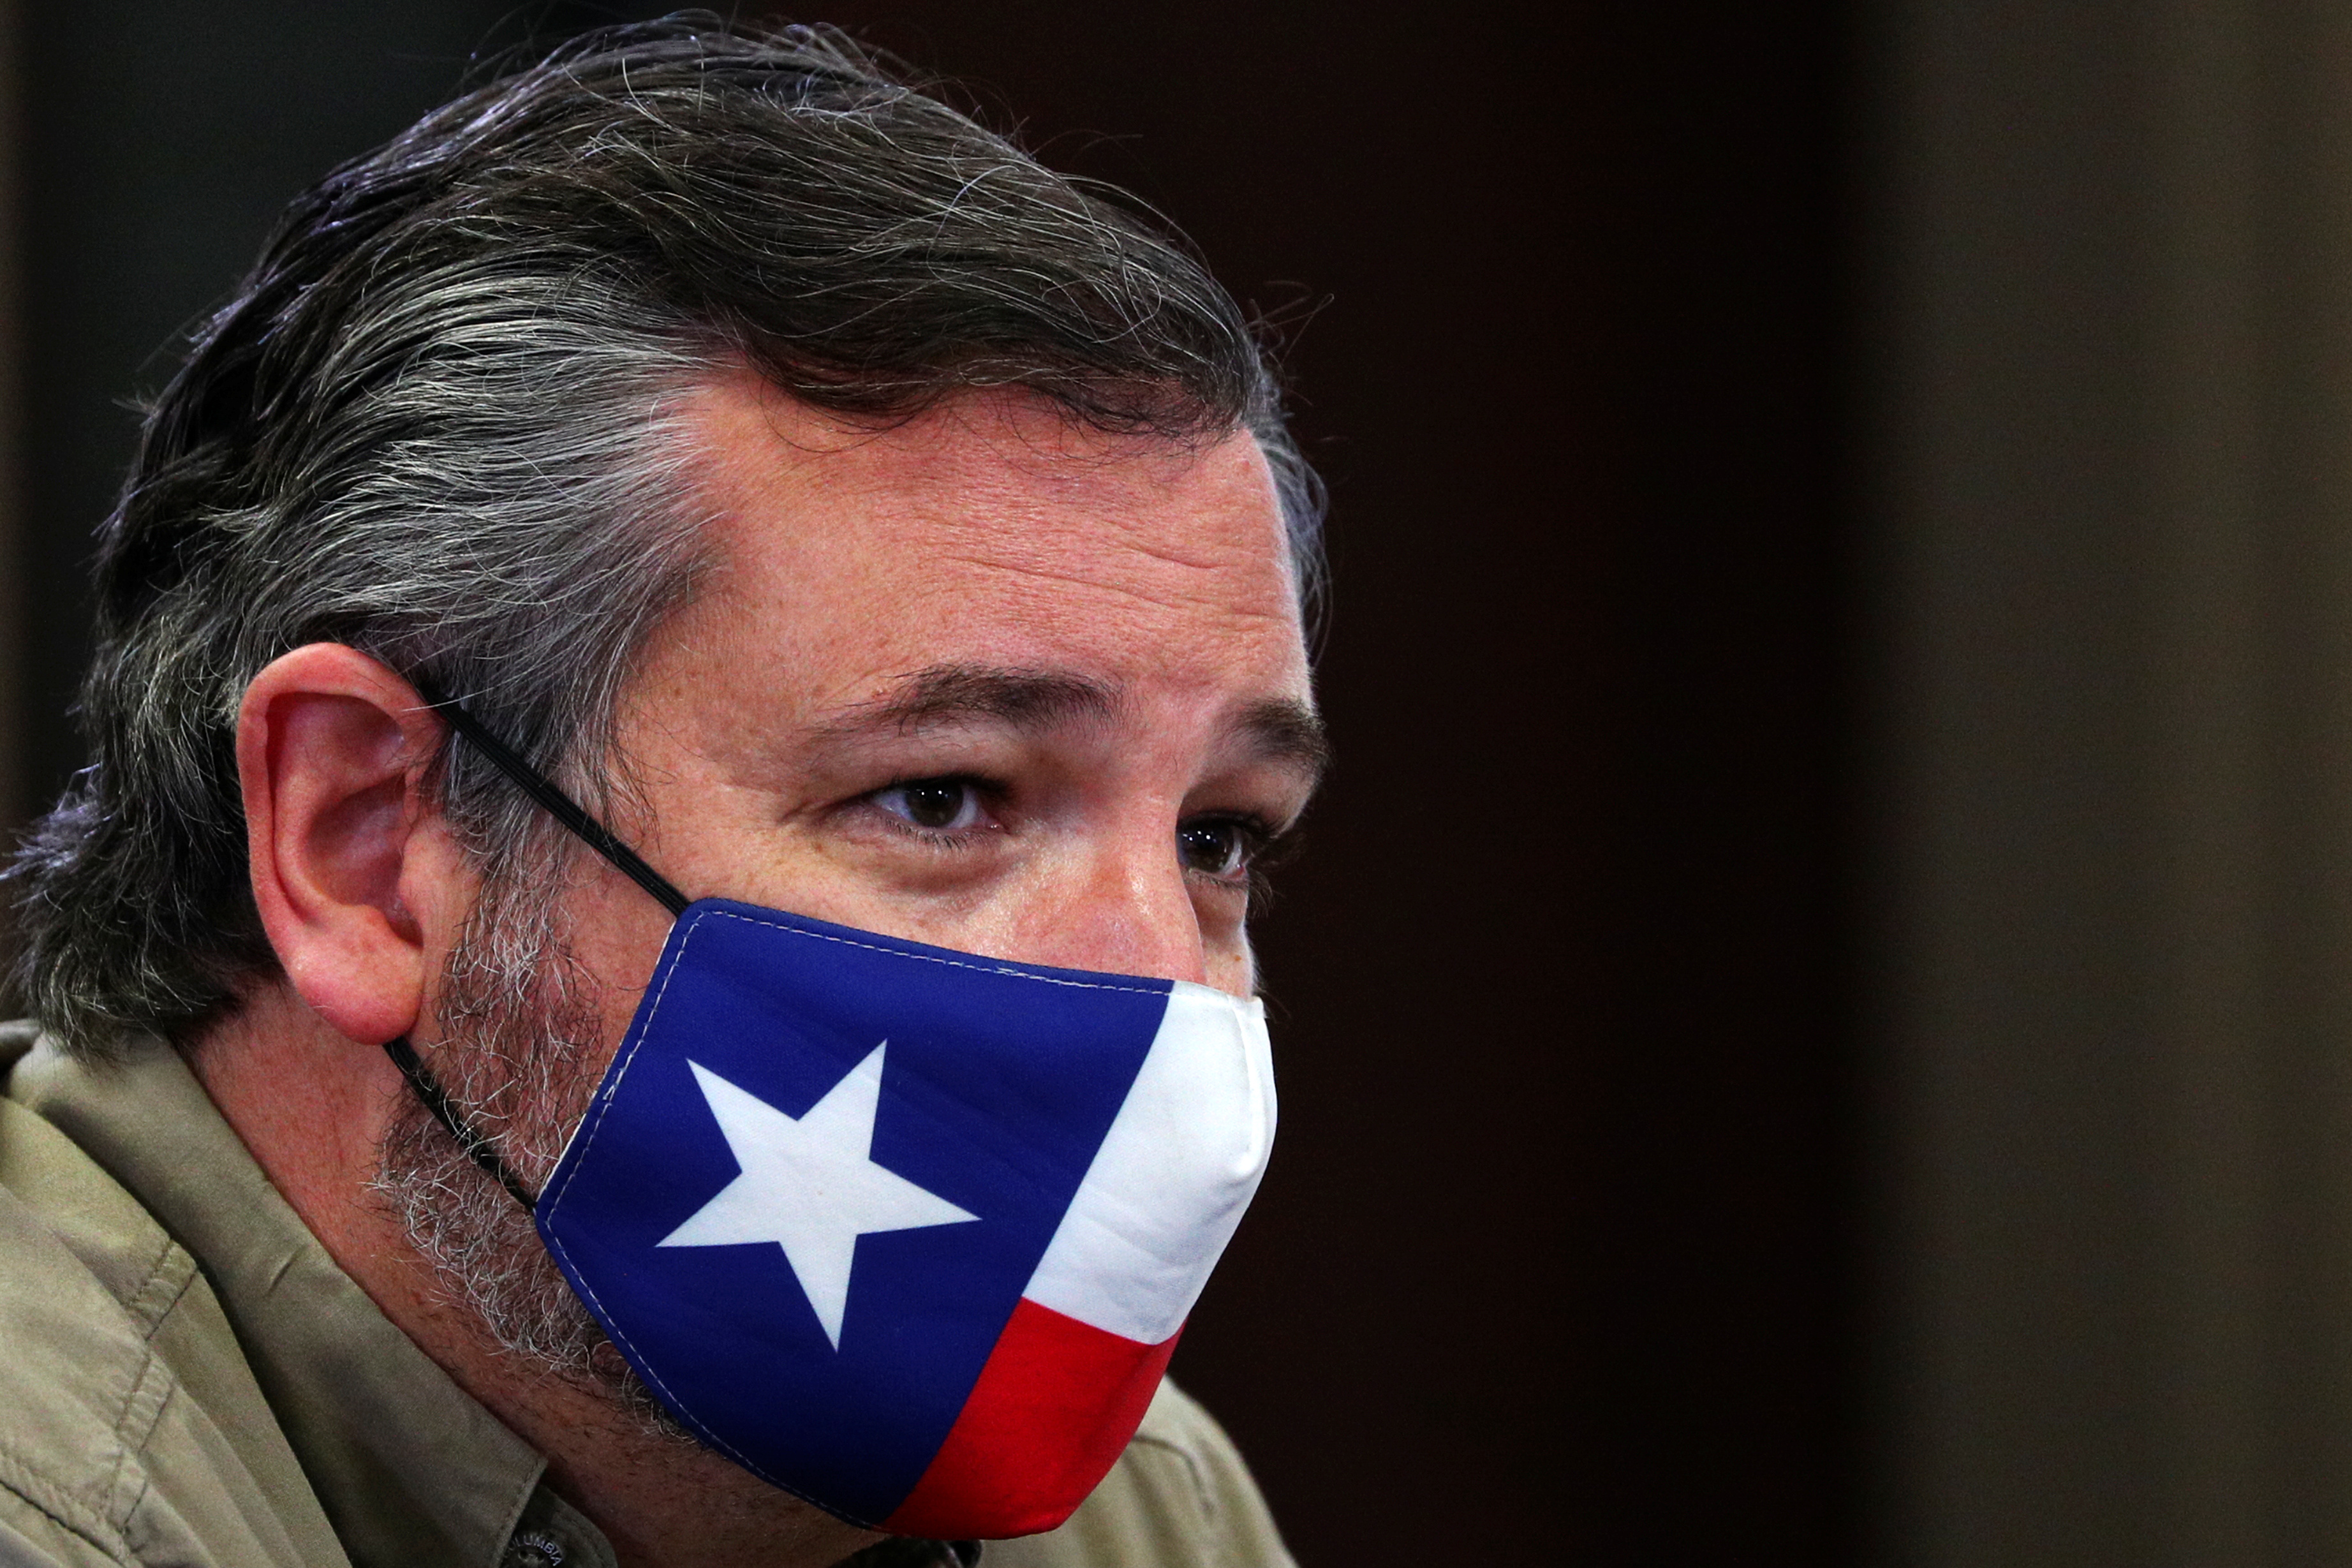 Ted Cruz, republicano de Texas, acusó a los demócratas californianos de creer que “necesitamos más adultos que tengan relaciones sexuales con niños”. (REUTERS/Tom Brenner)